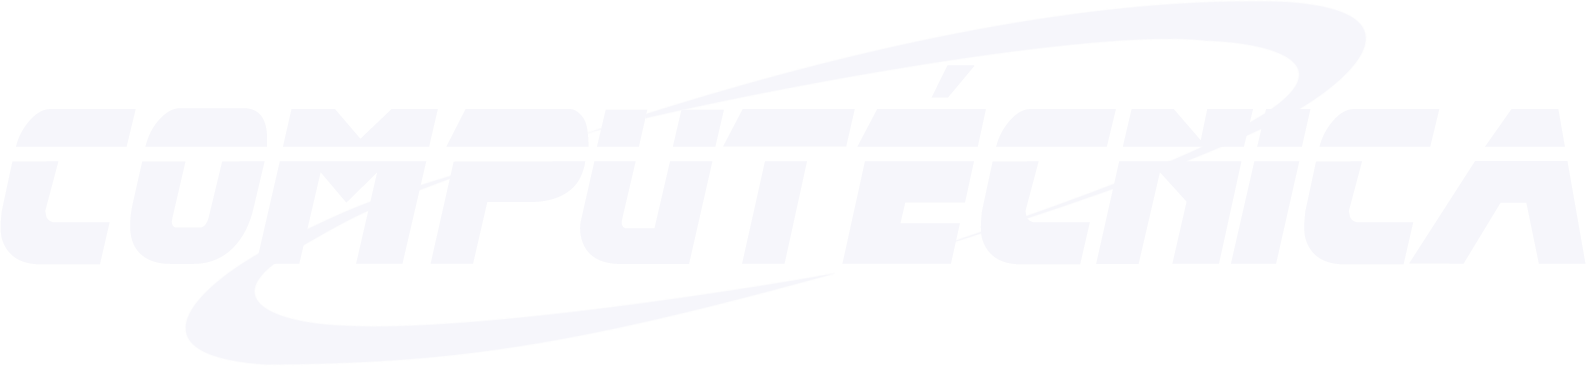 Computécnica - Logo Branco